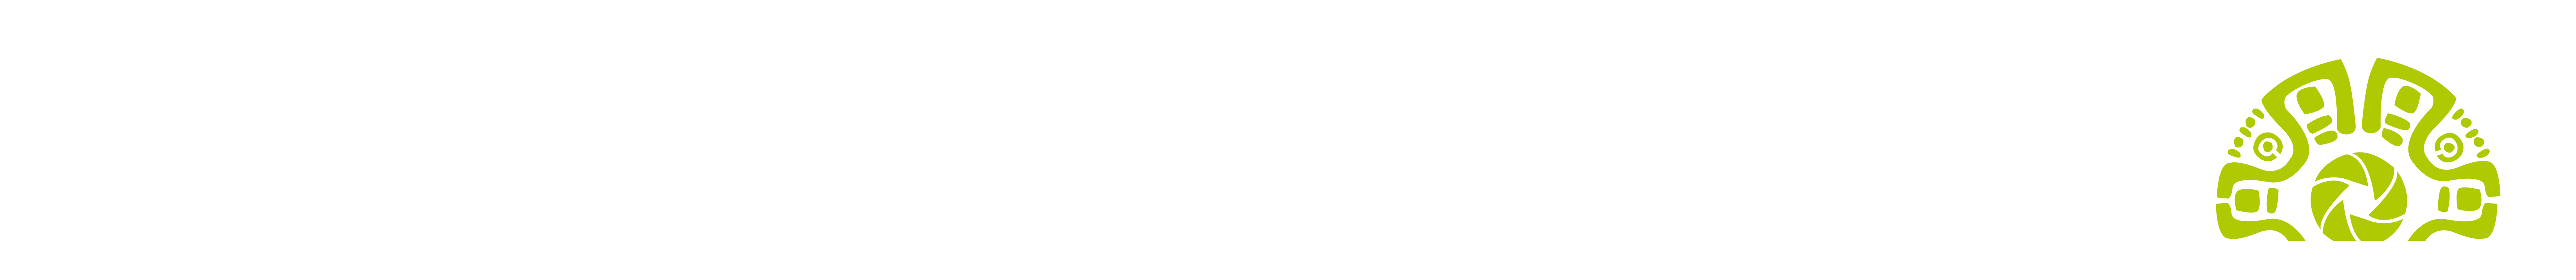 Logotipo para móvil de Woostify